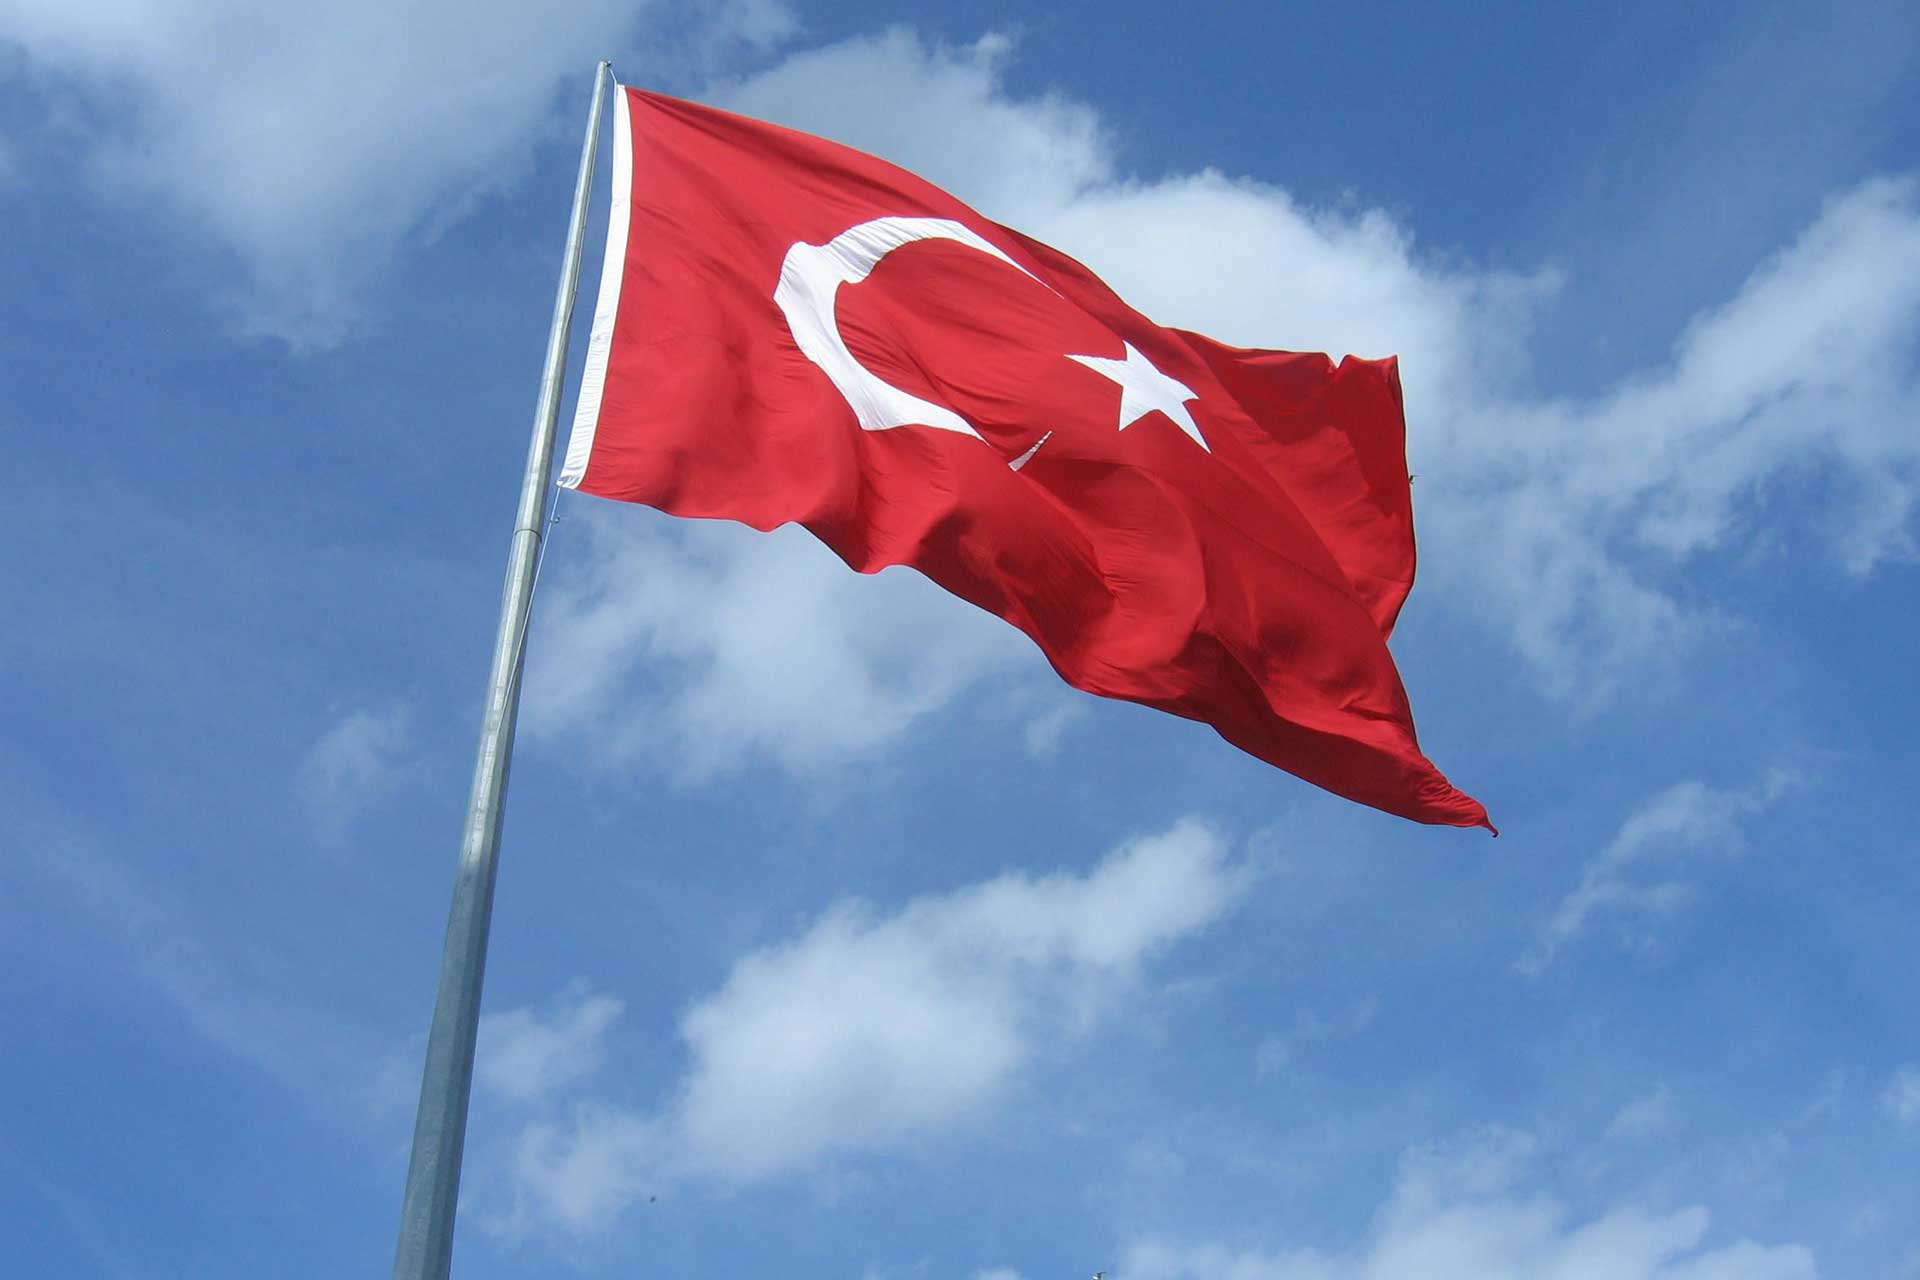 turk bayragi resimleri 2019 17